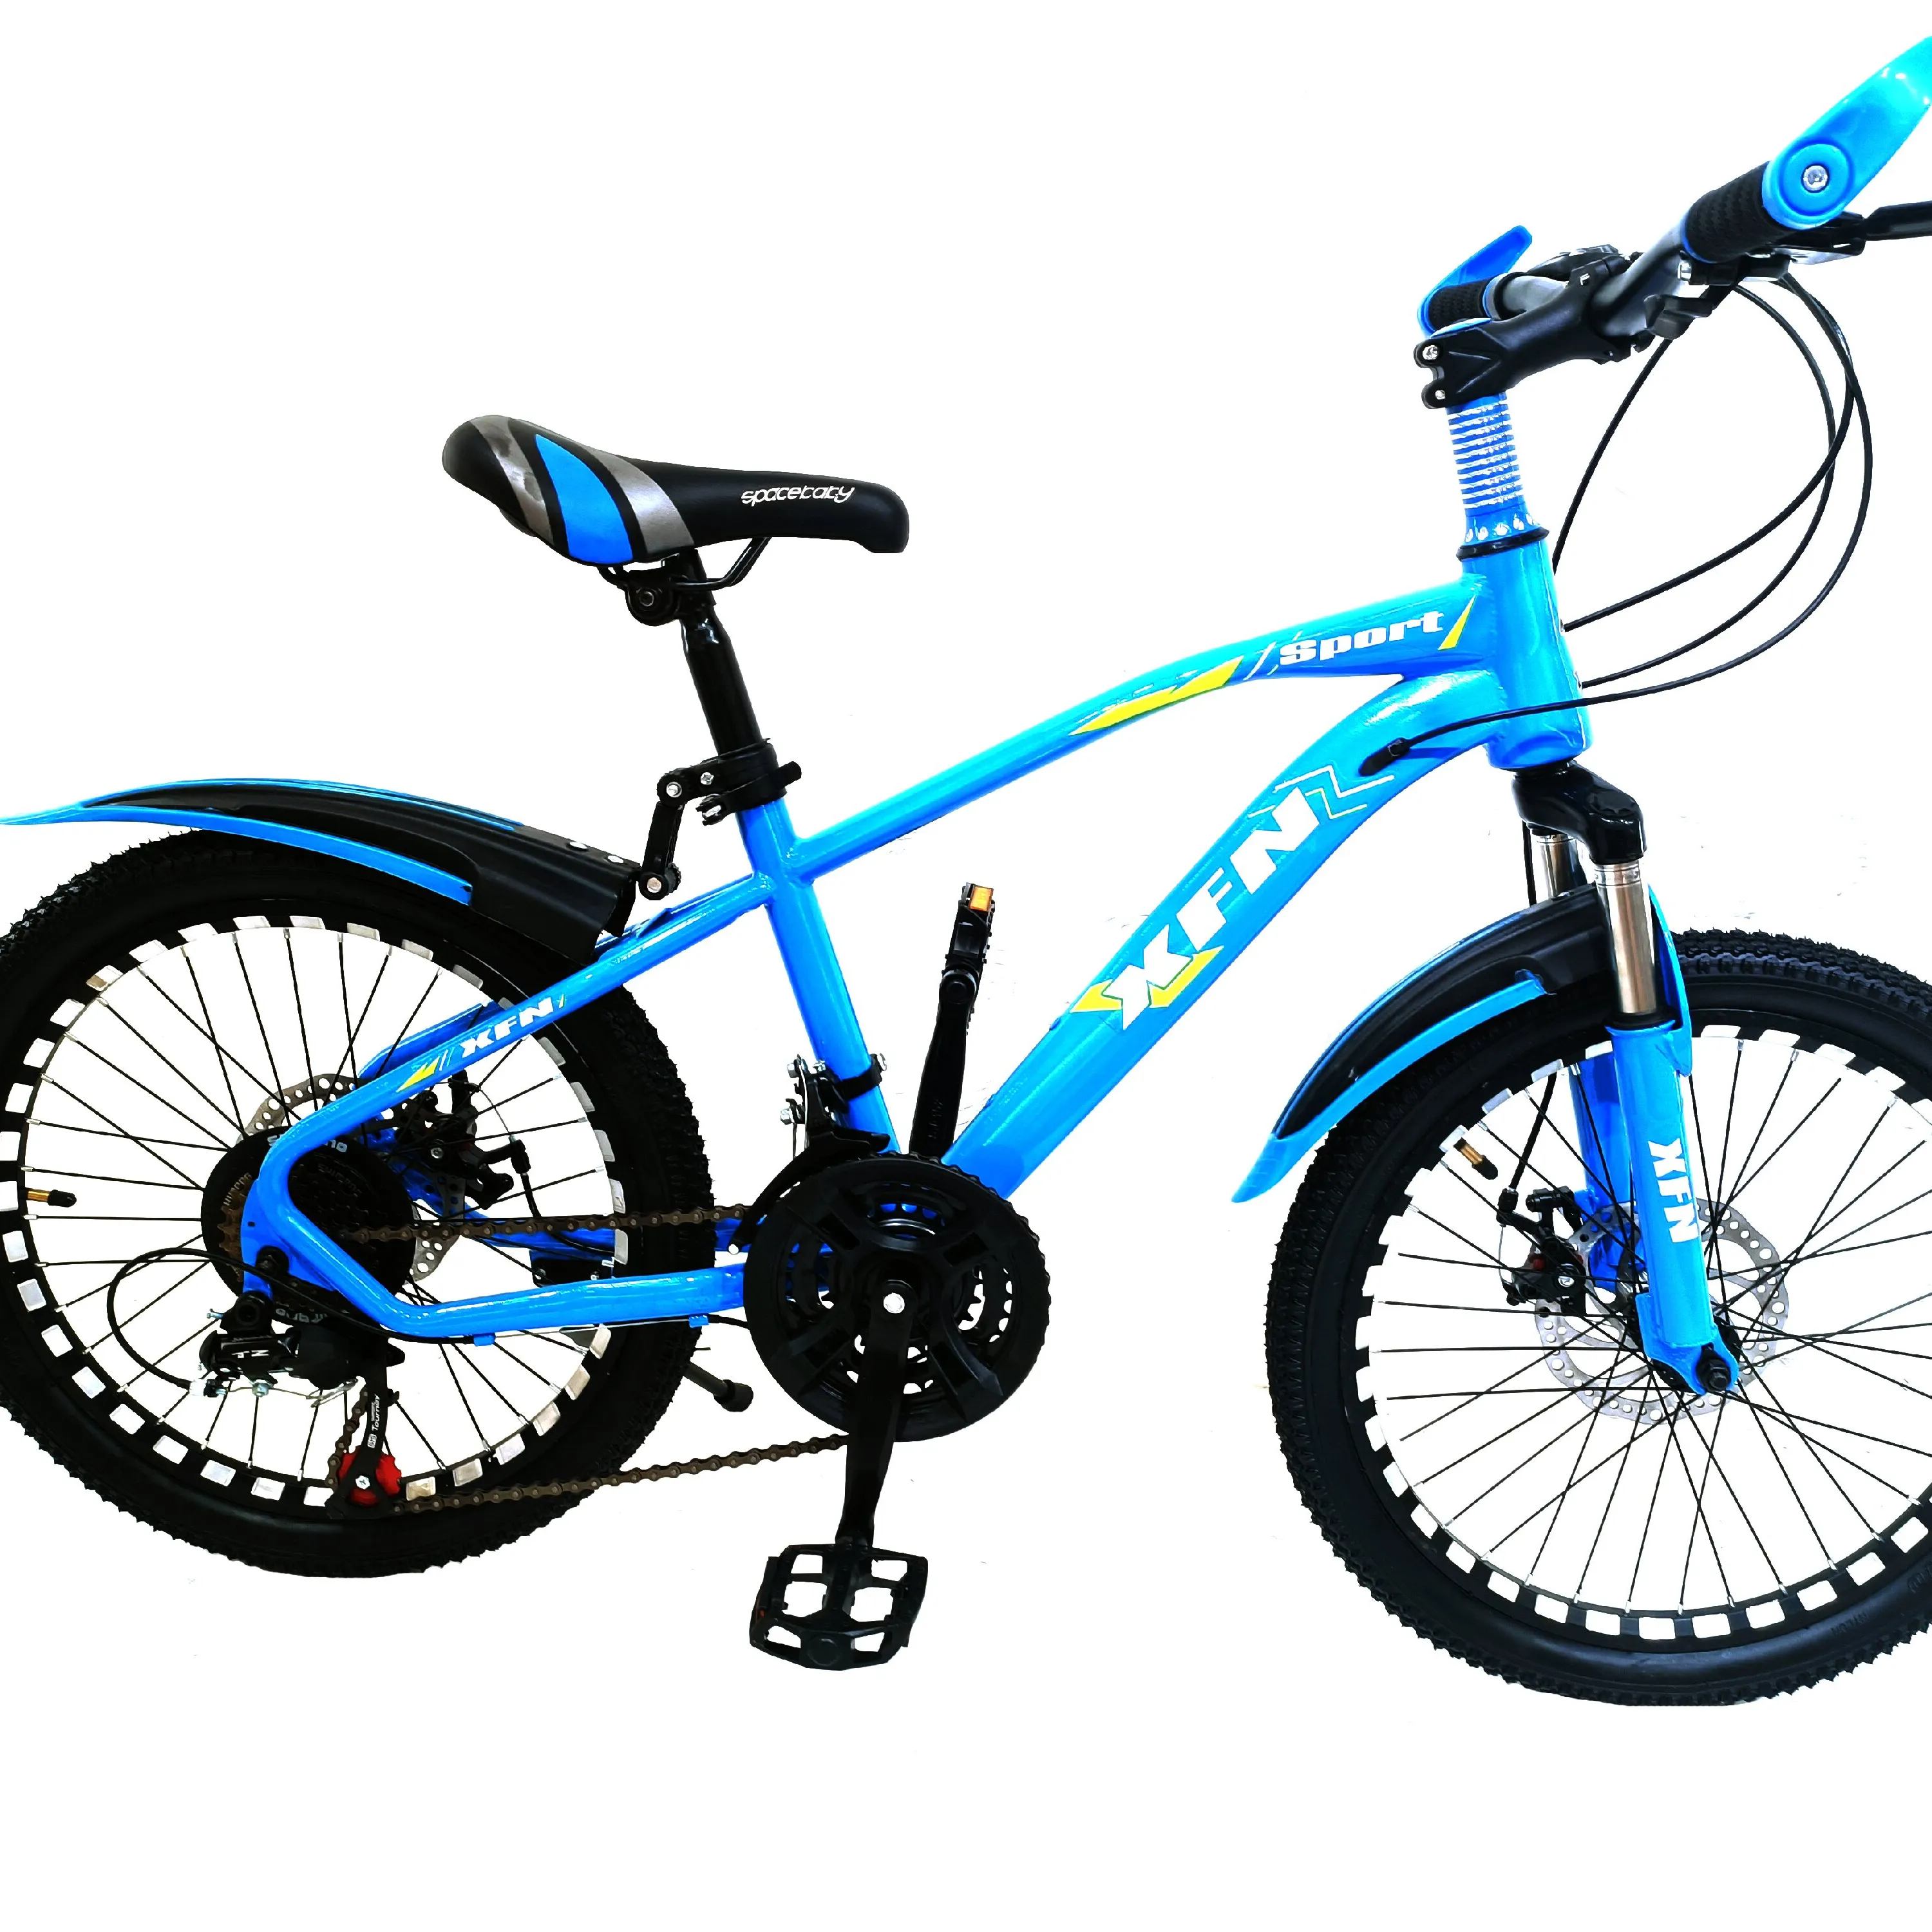 312 साल के बच्चों के लिए सस्ती कीमत वाली प्यारी 16 इंच बच्चों की बाइक, 6 साल की लड़की के लिए उच्च गुणवत्ता वाली बच्चों की साइकिल 12